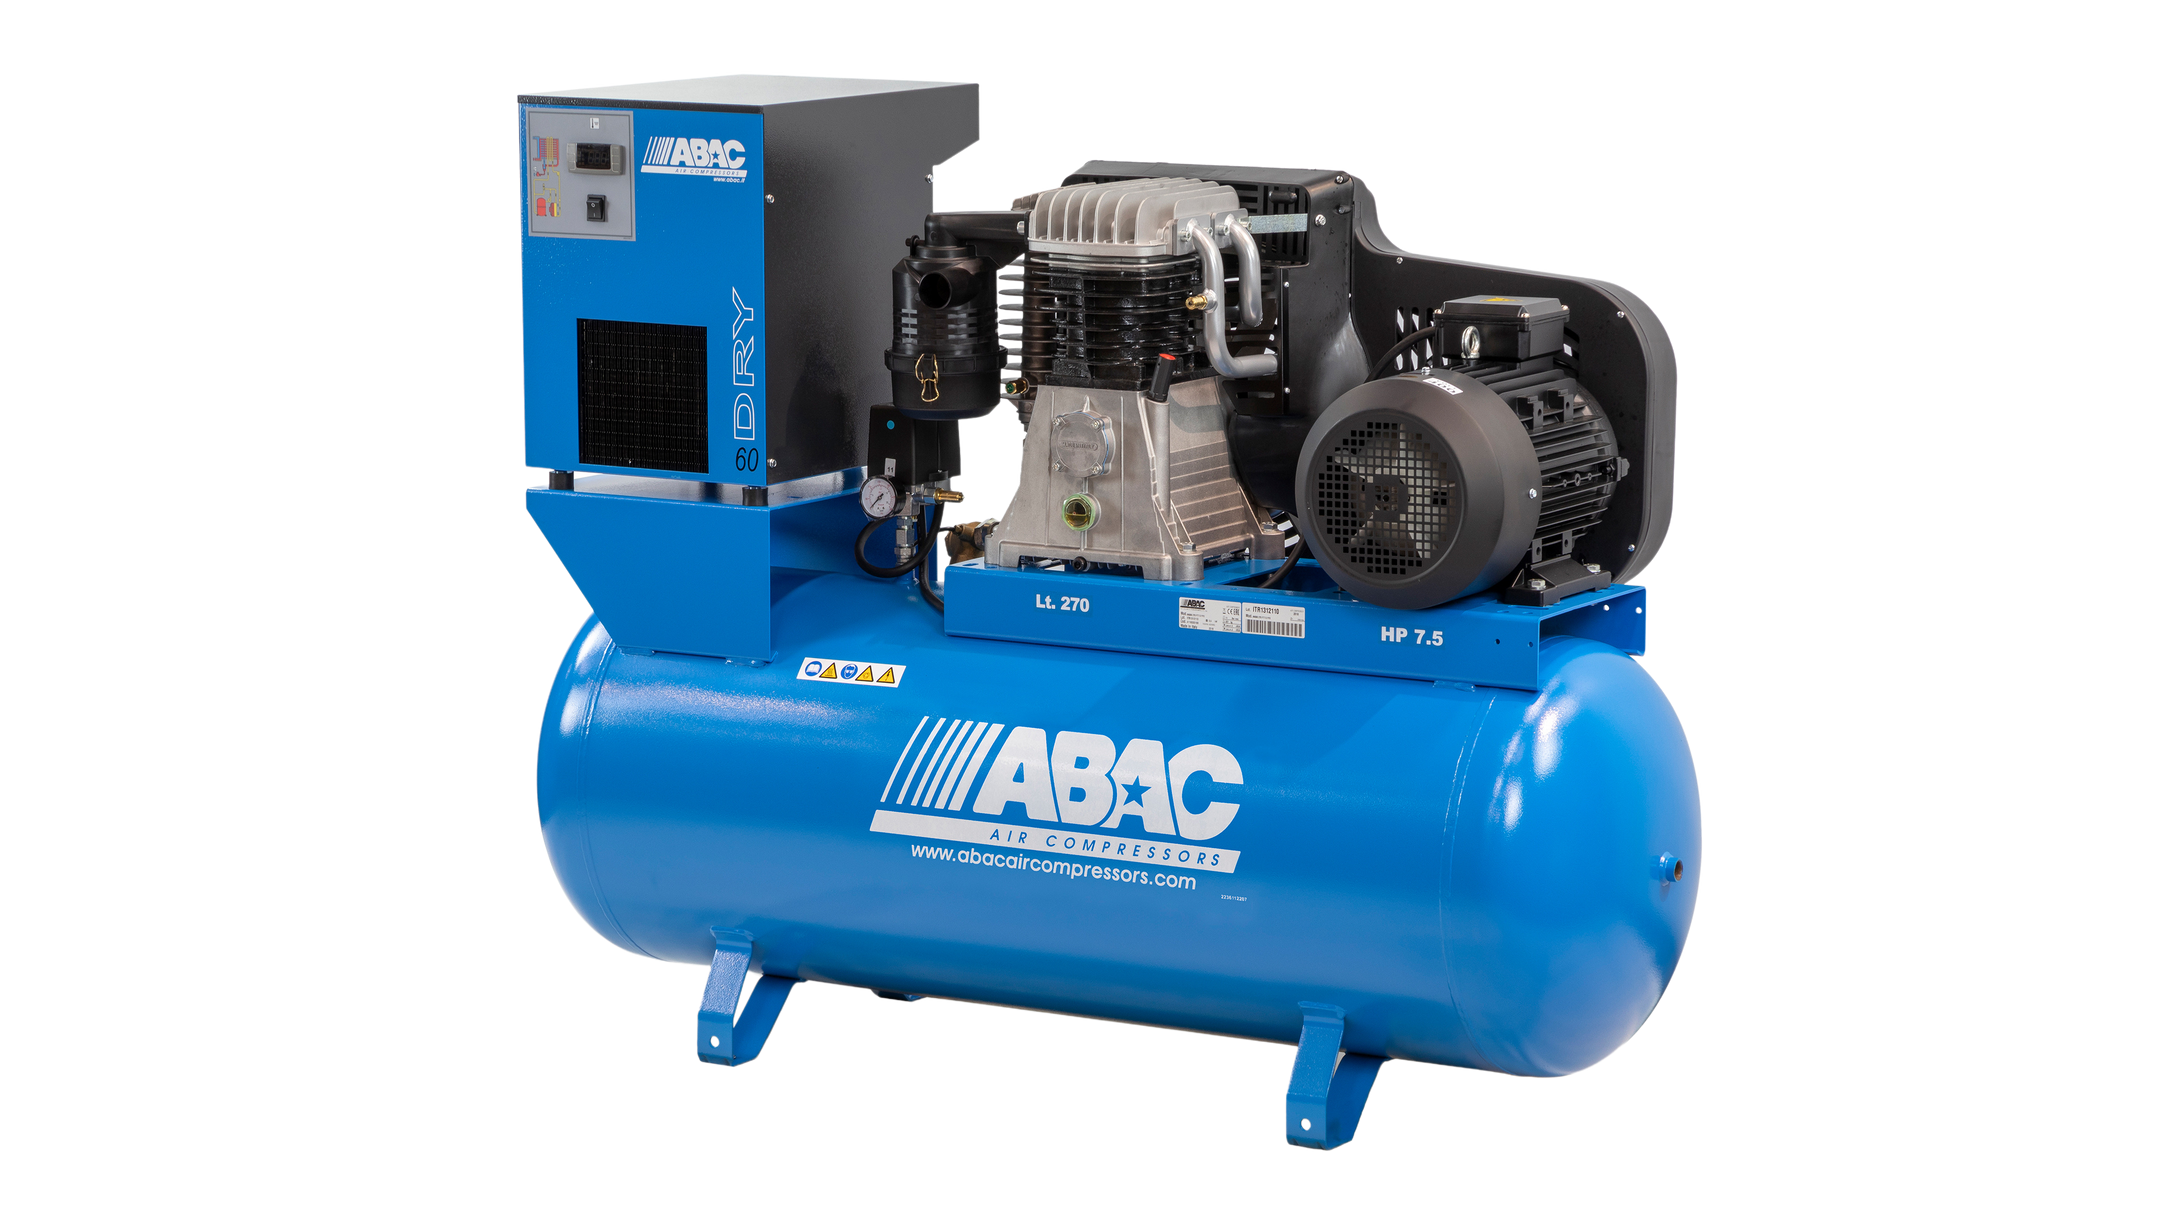 Abac PRO B7000 270L FT10 FFO 415V & Dryer Special Order - 4116000175